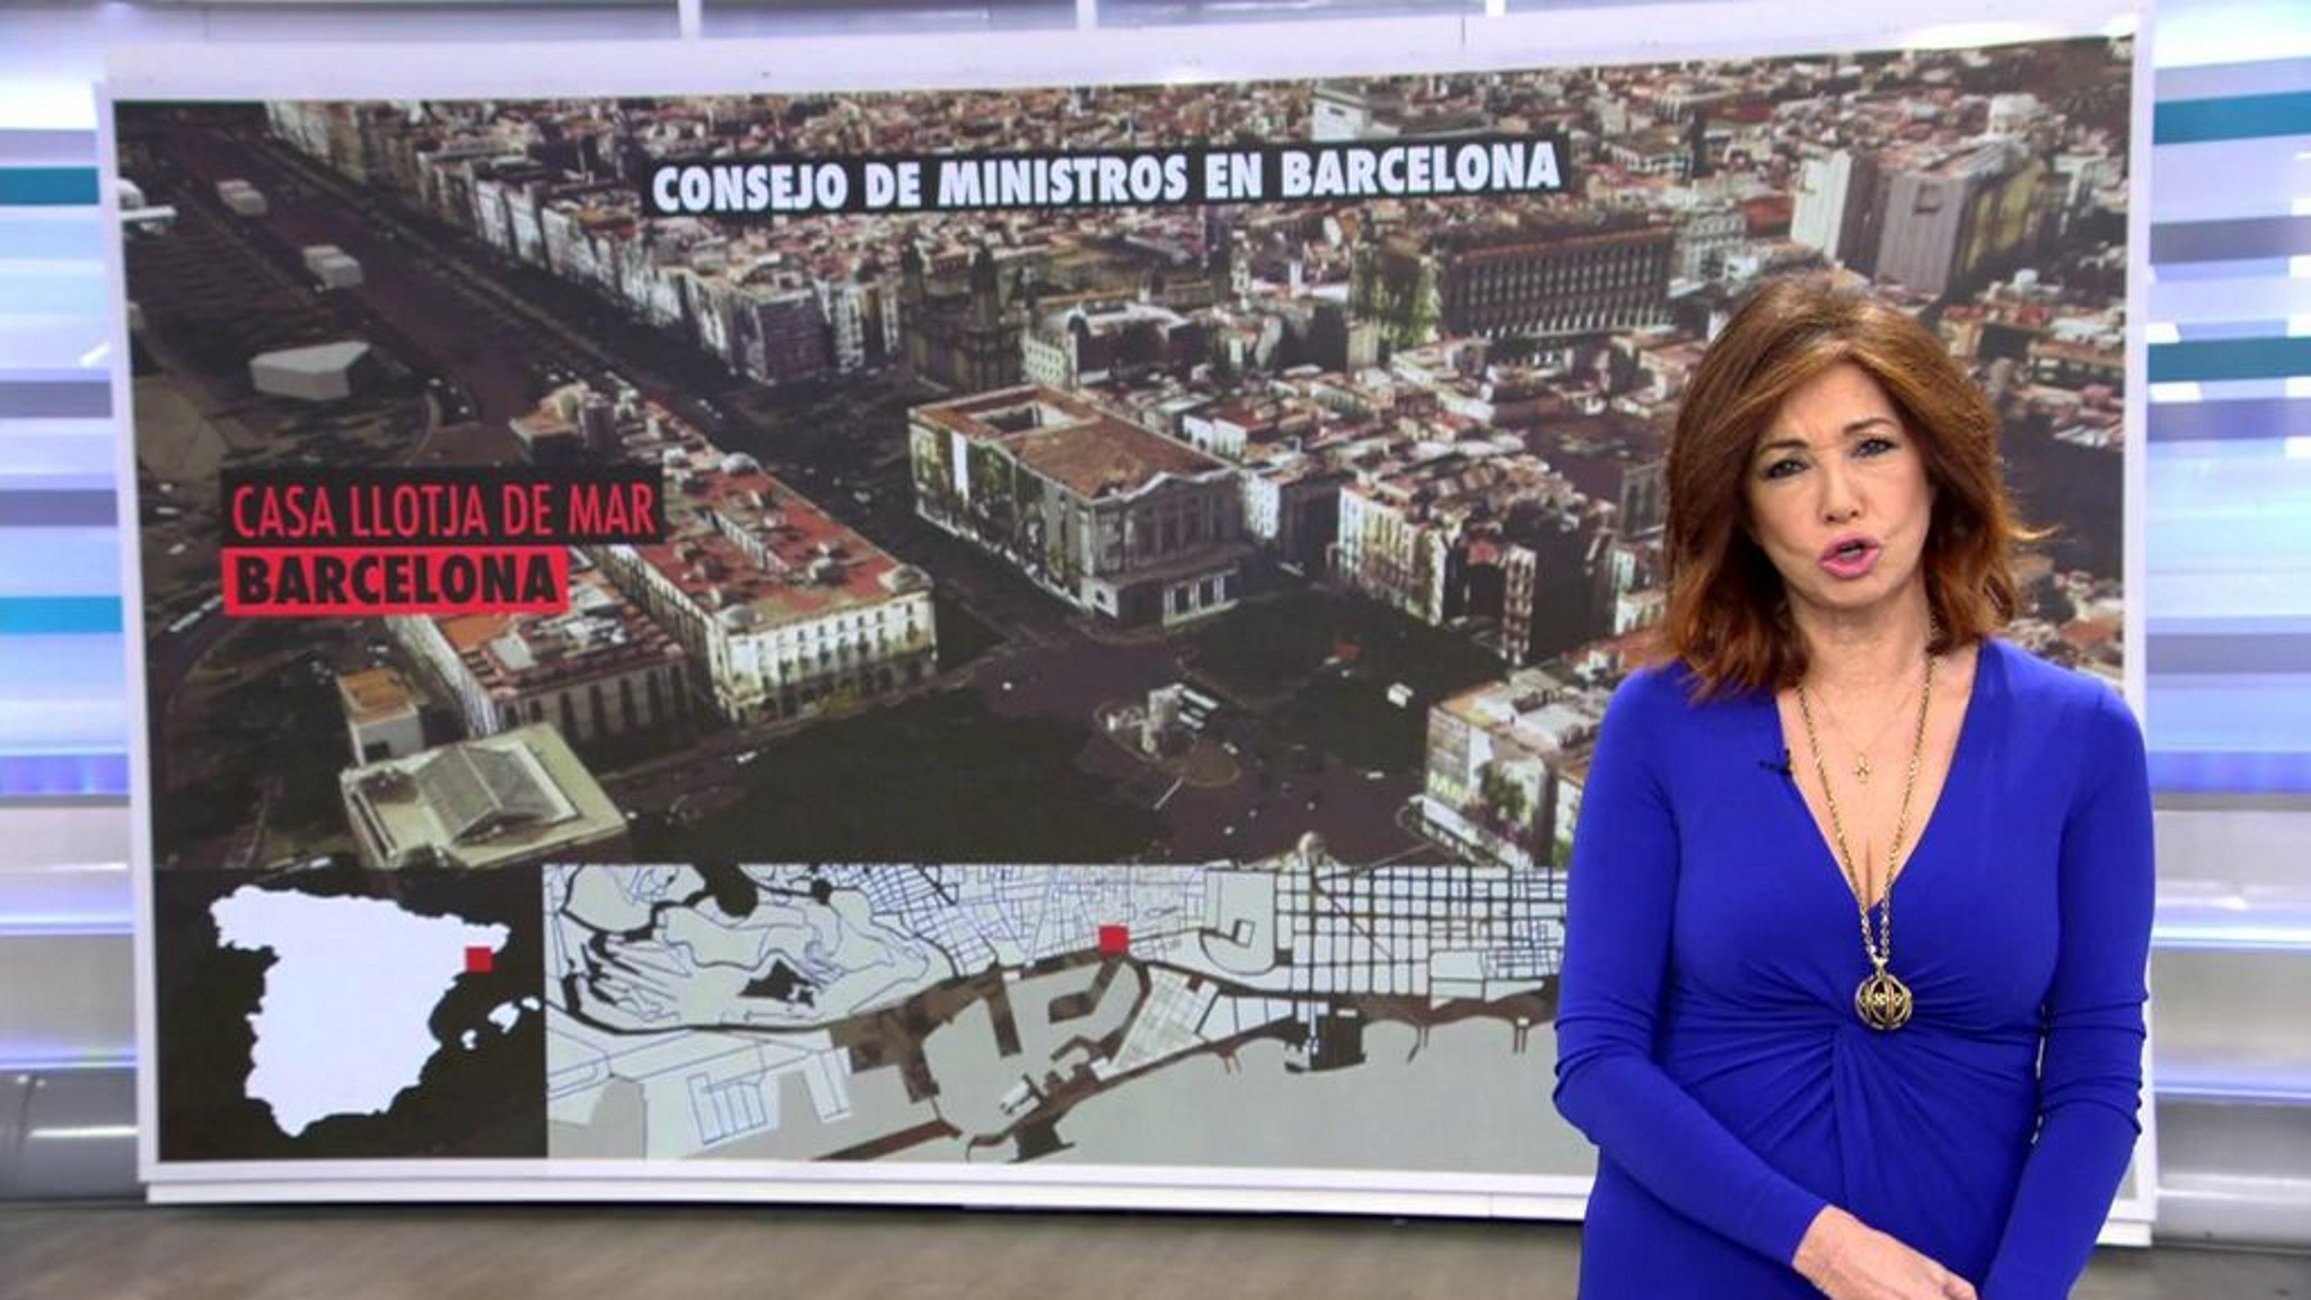 Ana Rosa alarma l’audiència dibuixant una Barcelona prop del conflicte